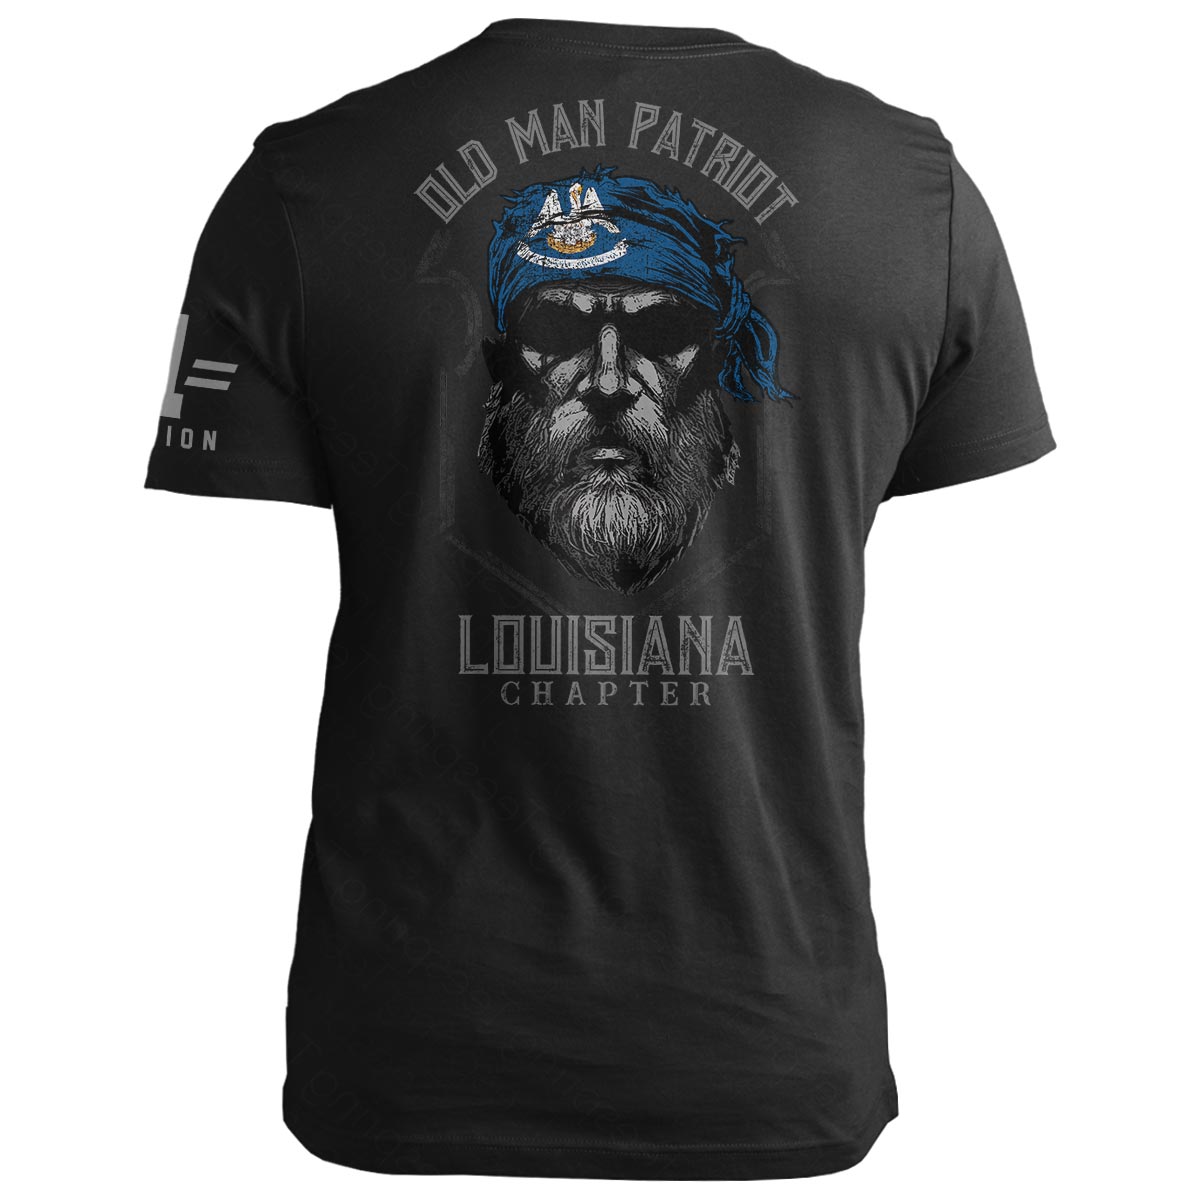 Louisiana Old Man Patriot